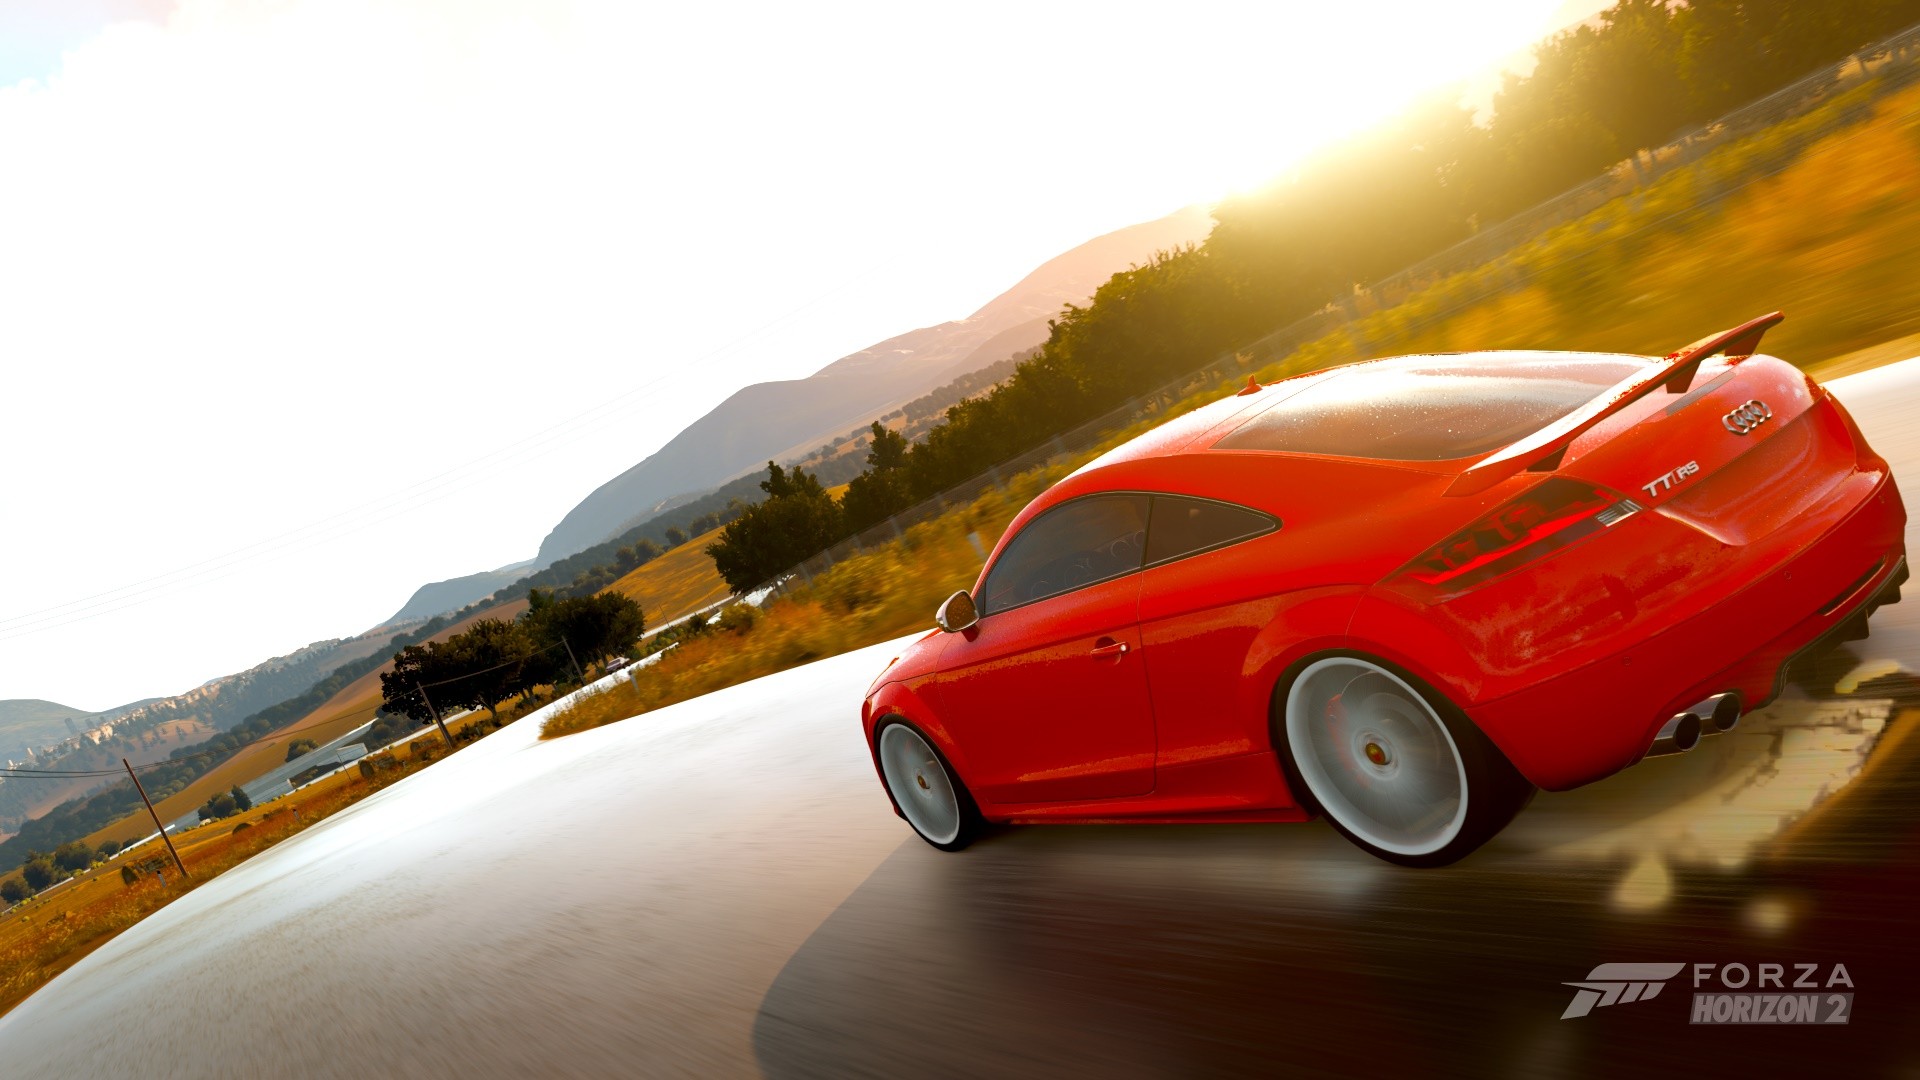 General 1920x1080 Forza Horizon 2 car video games Turn 10 Studios red cars Audi racing